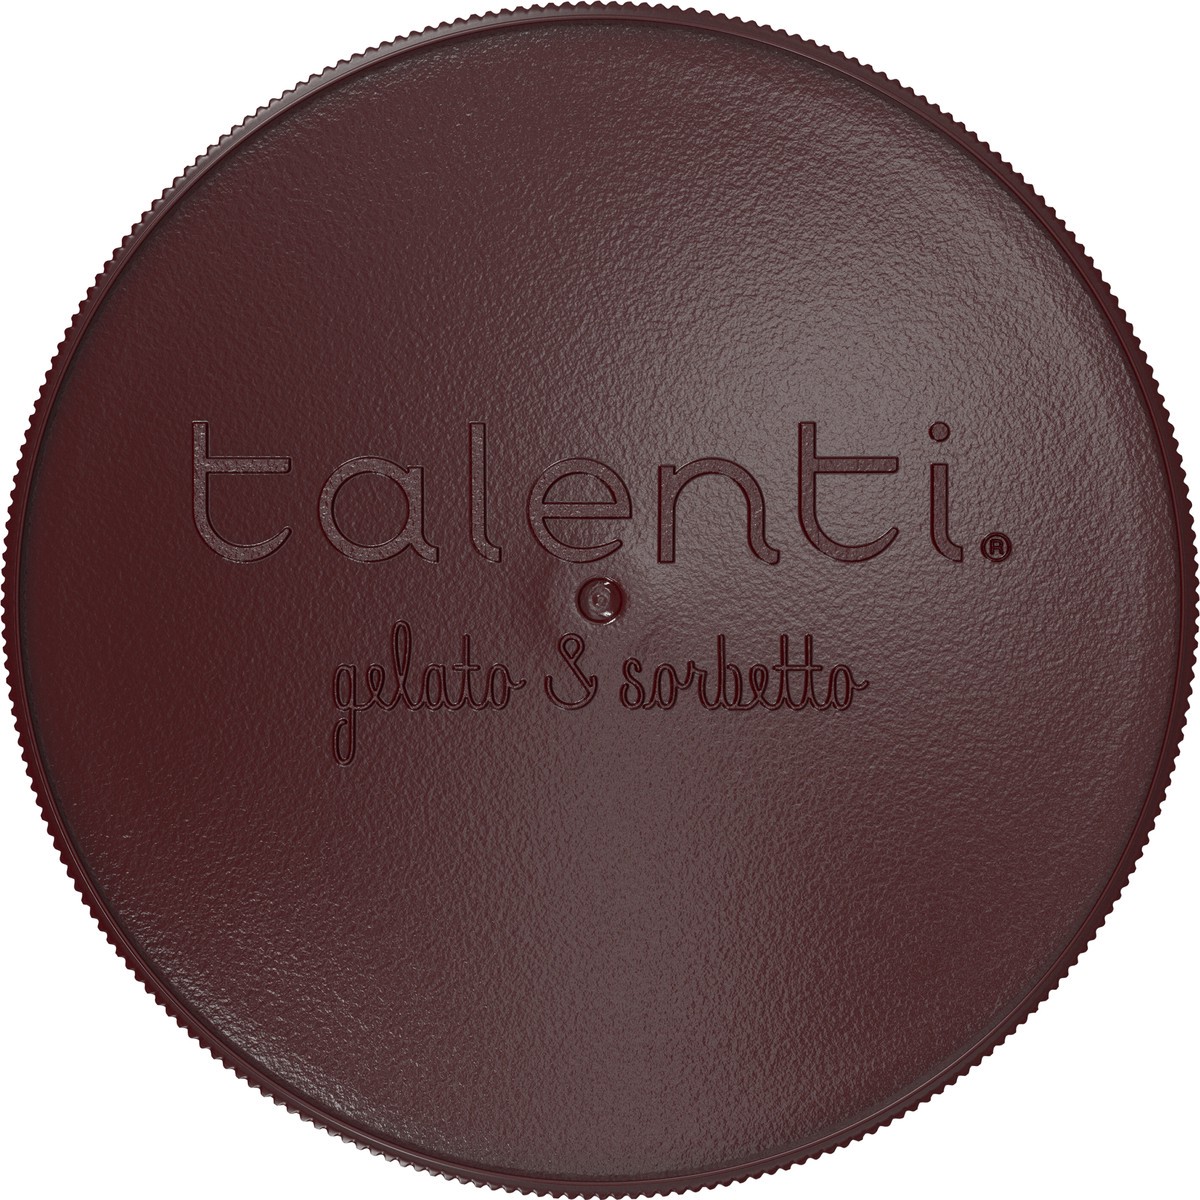 slide 6 of 9, Talenti Gelato Mediterranean Mint, 1 pint, 1 pint